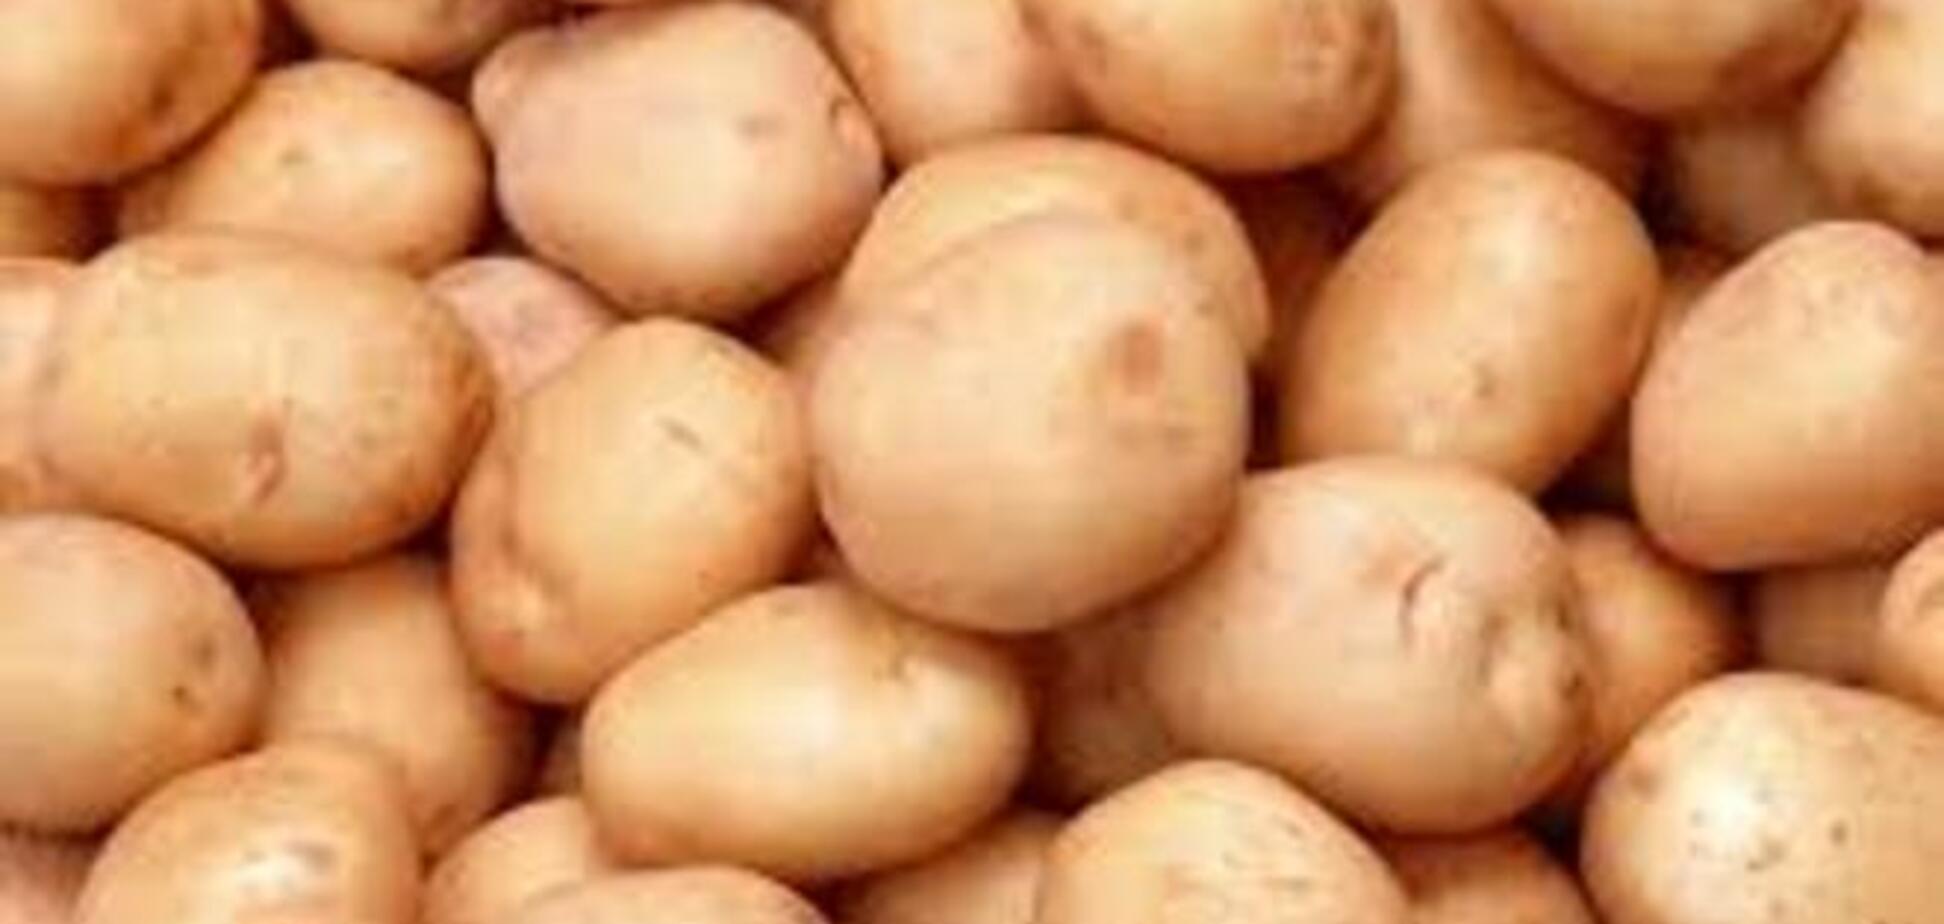 Россия посчитала украинский картофель вредным для здоровья своих граждан